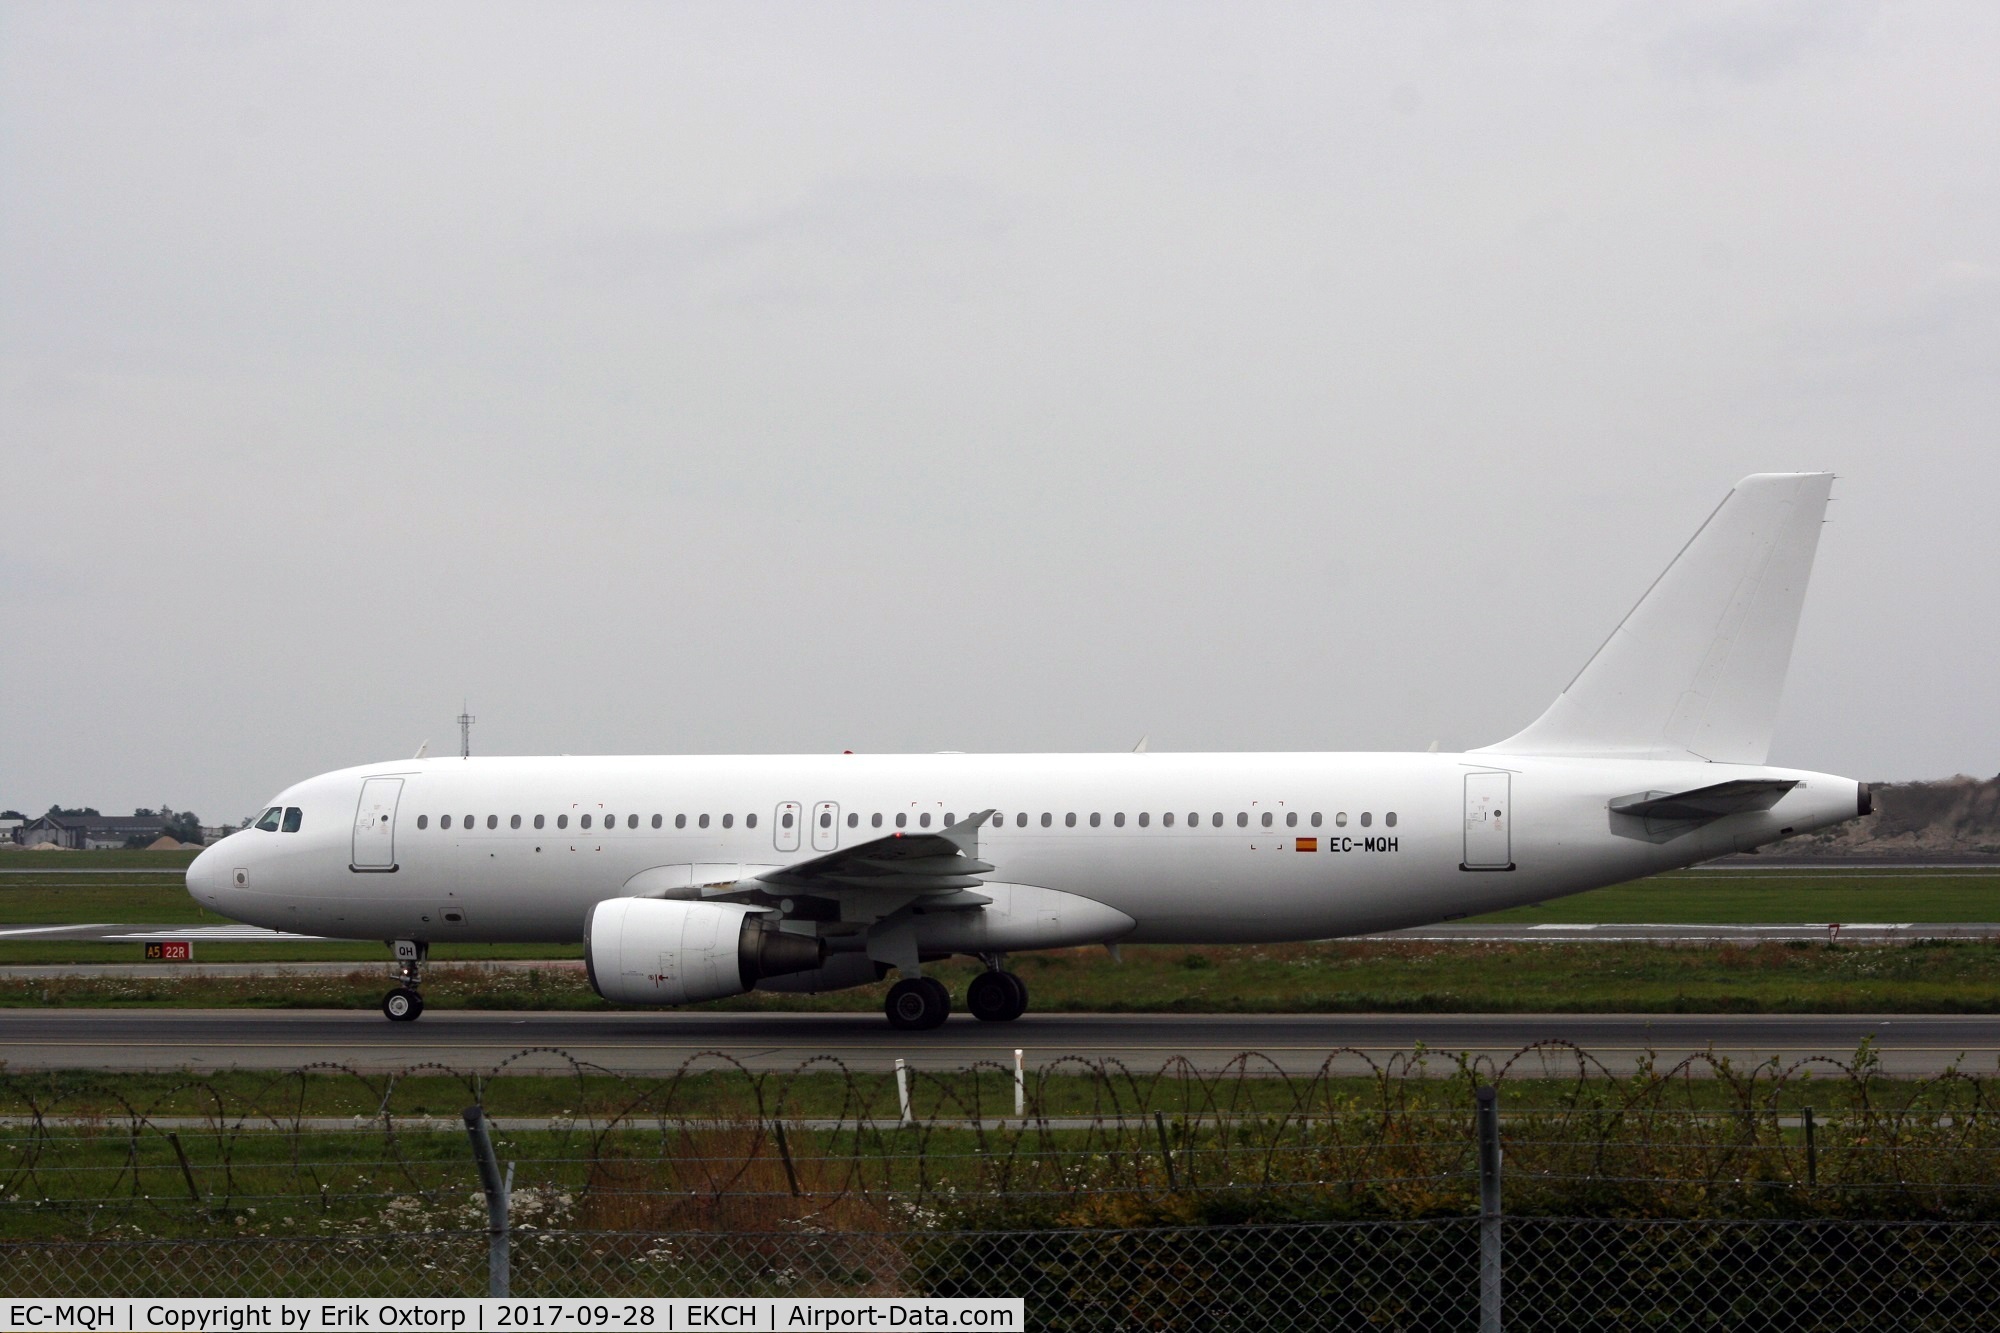 EC-MQH, 2000 Airbus A320-214 C/N 1296, EC-MQH landed rw 04L